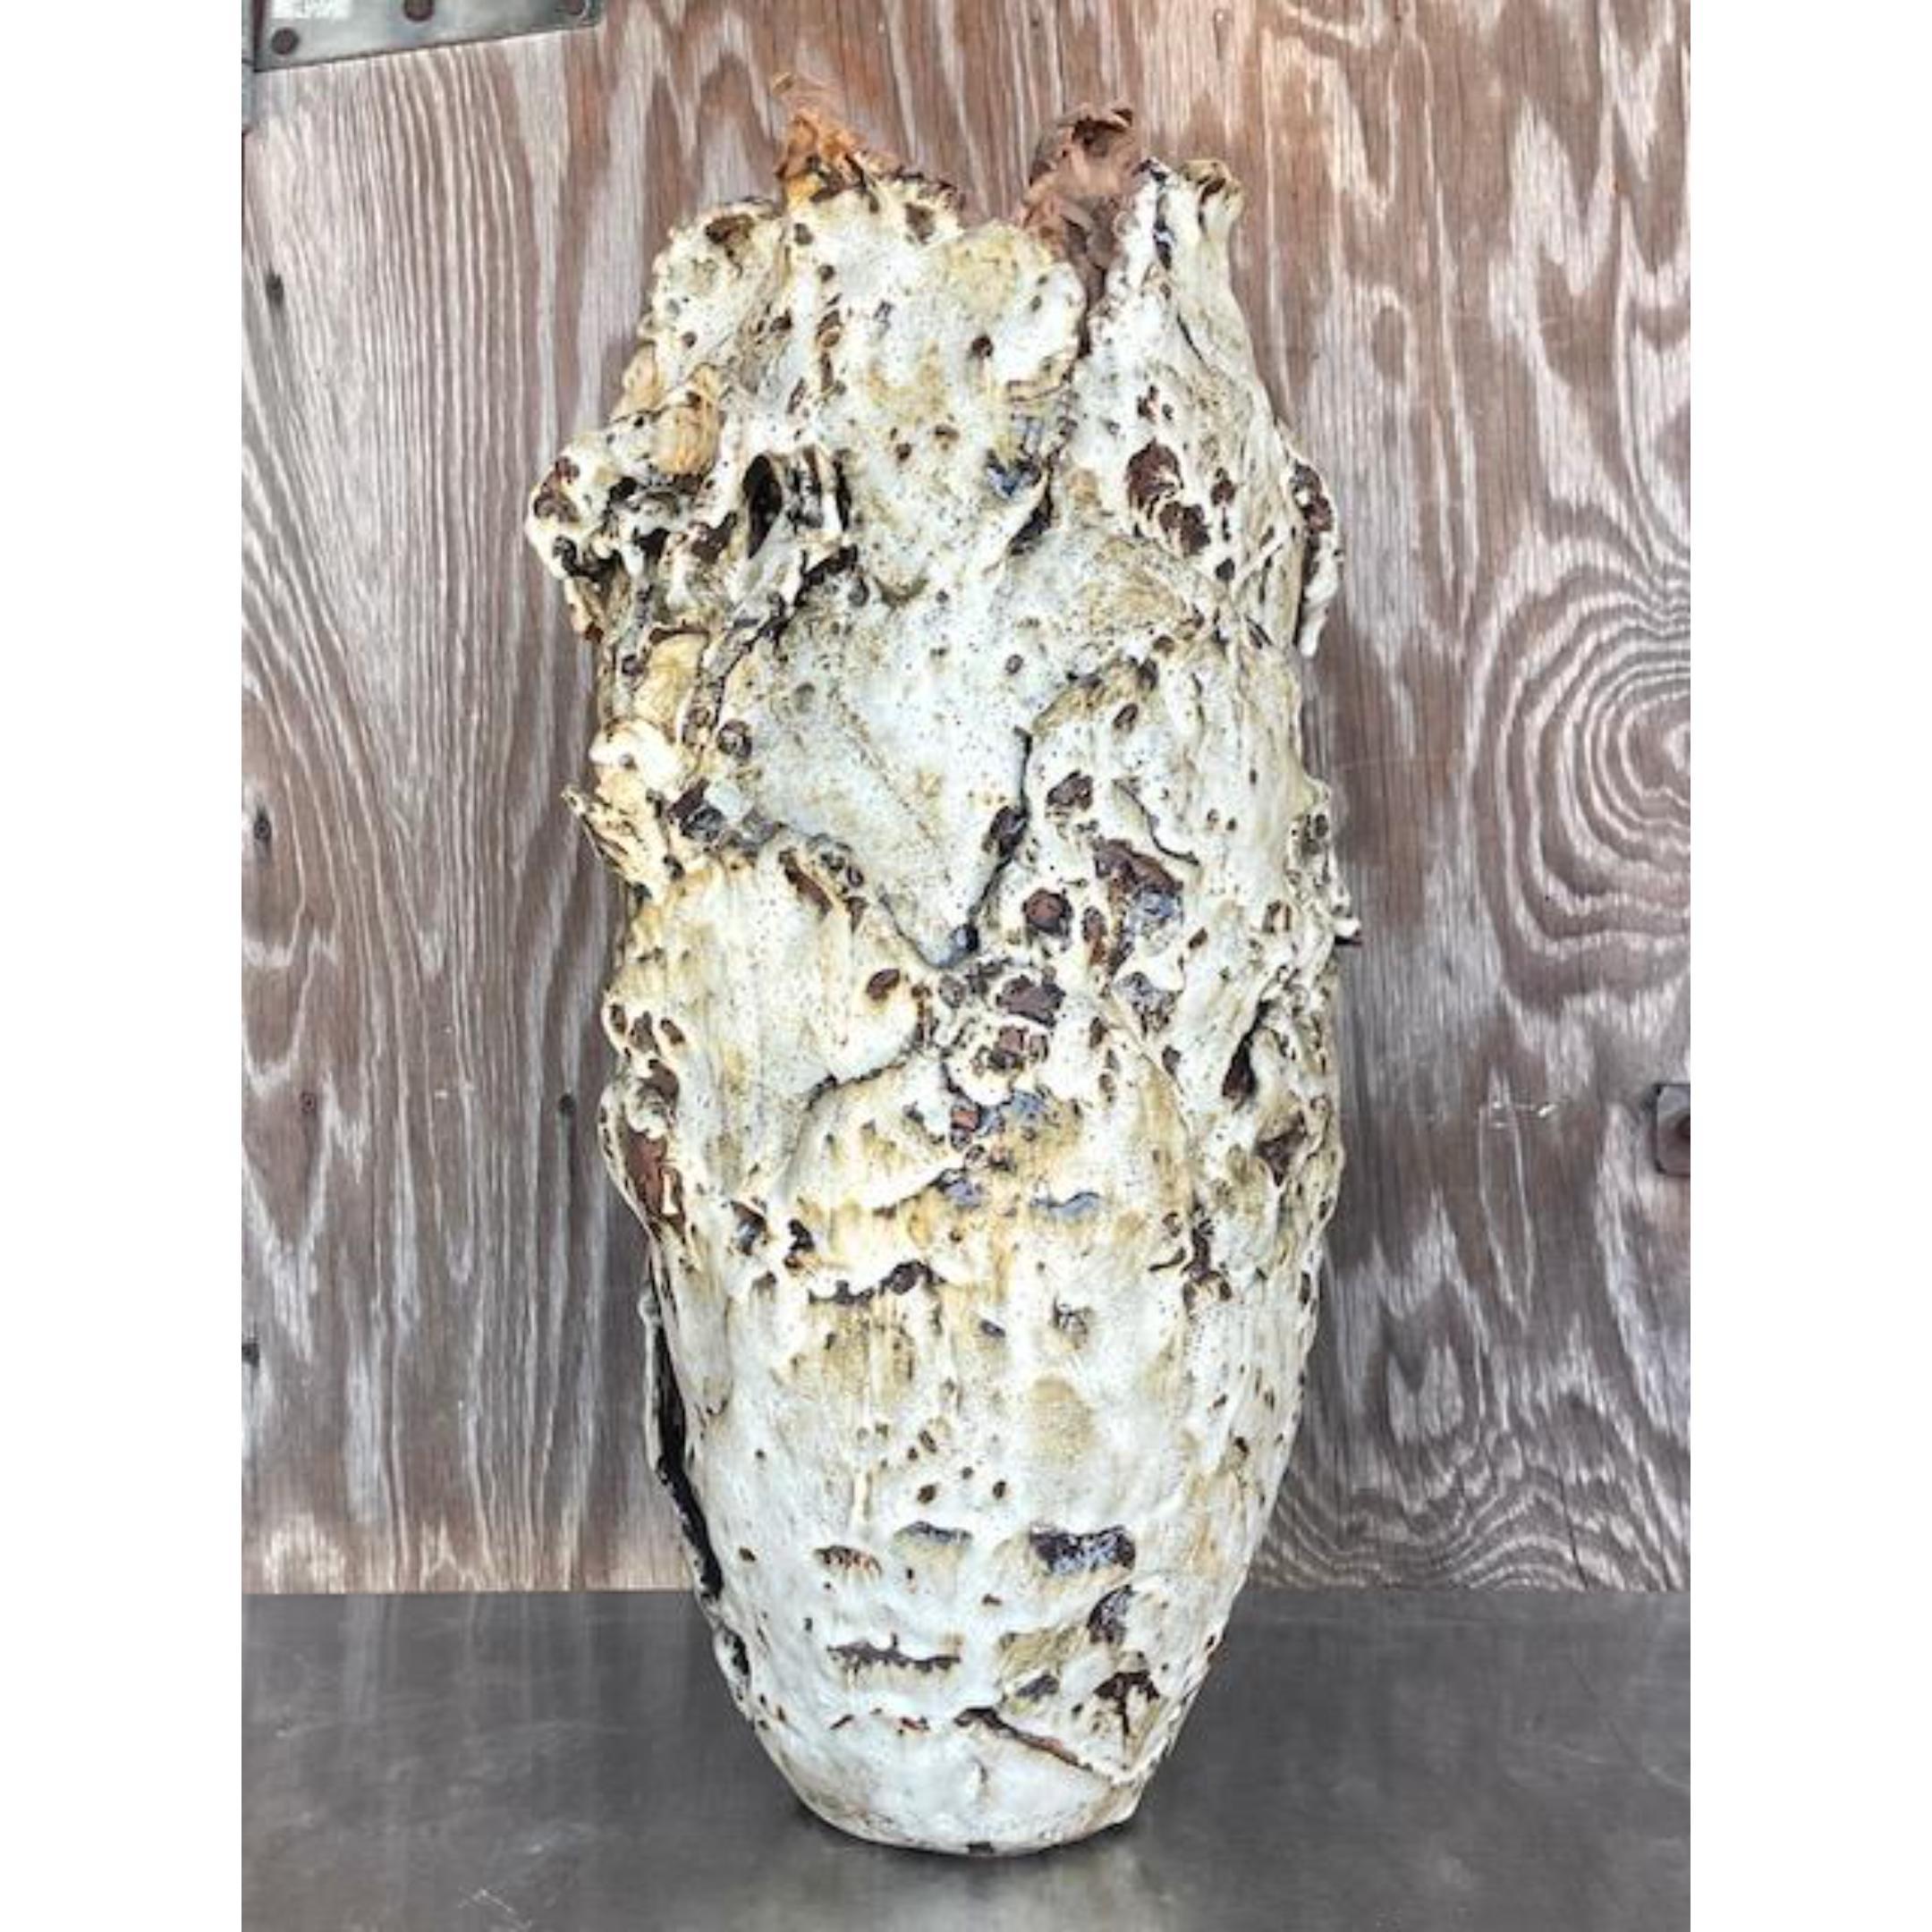 Un extraordinaire vase Boho vintage. Une création chic construite sur une dalle avec une incroyable finition texturée et stratifiée. Un ajout frappant à tout espace. Acquis d'une propriété de Palm Beach.